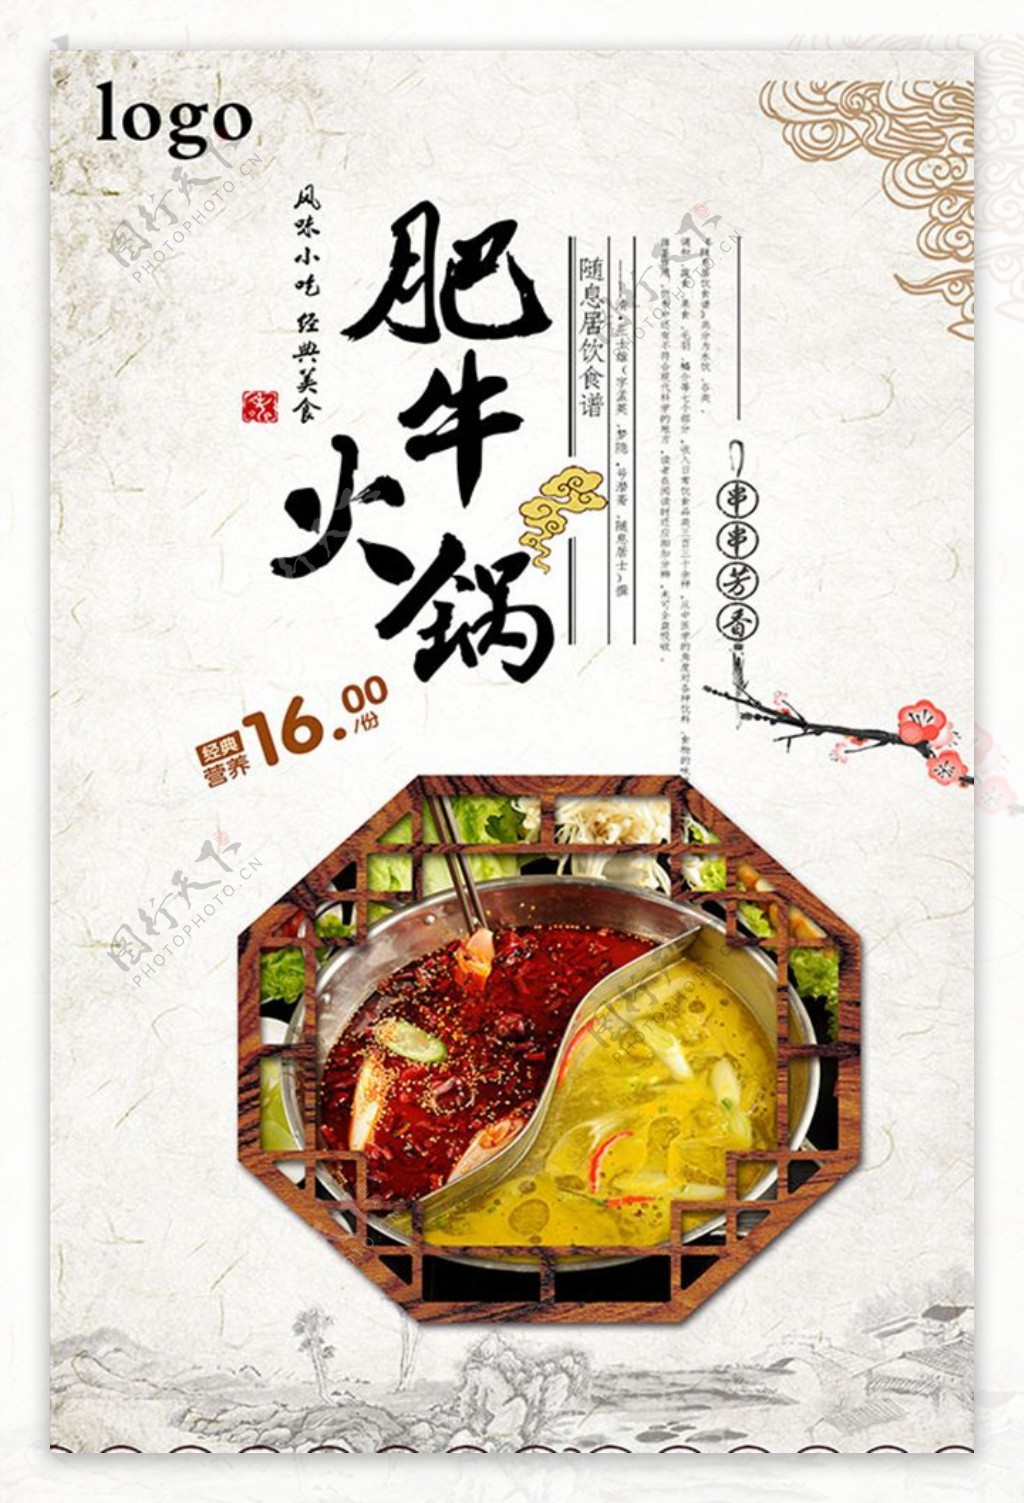 中国风肥牛火锅海报